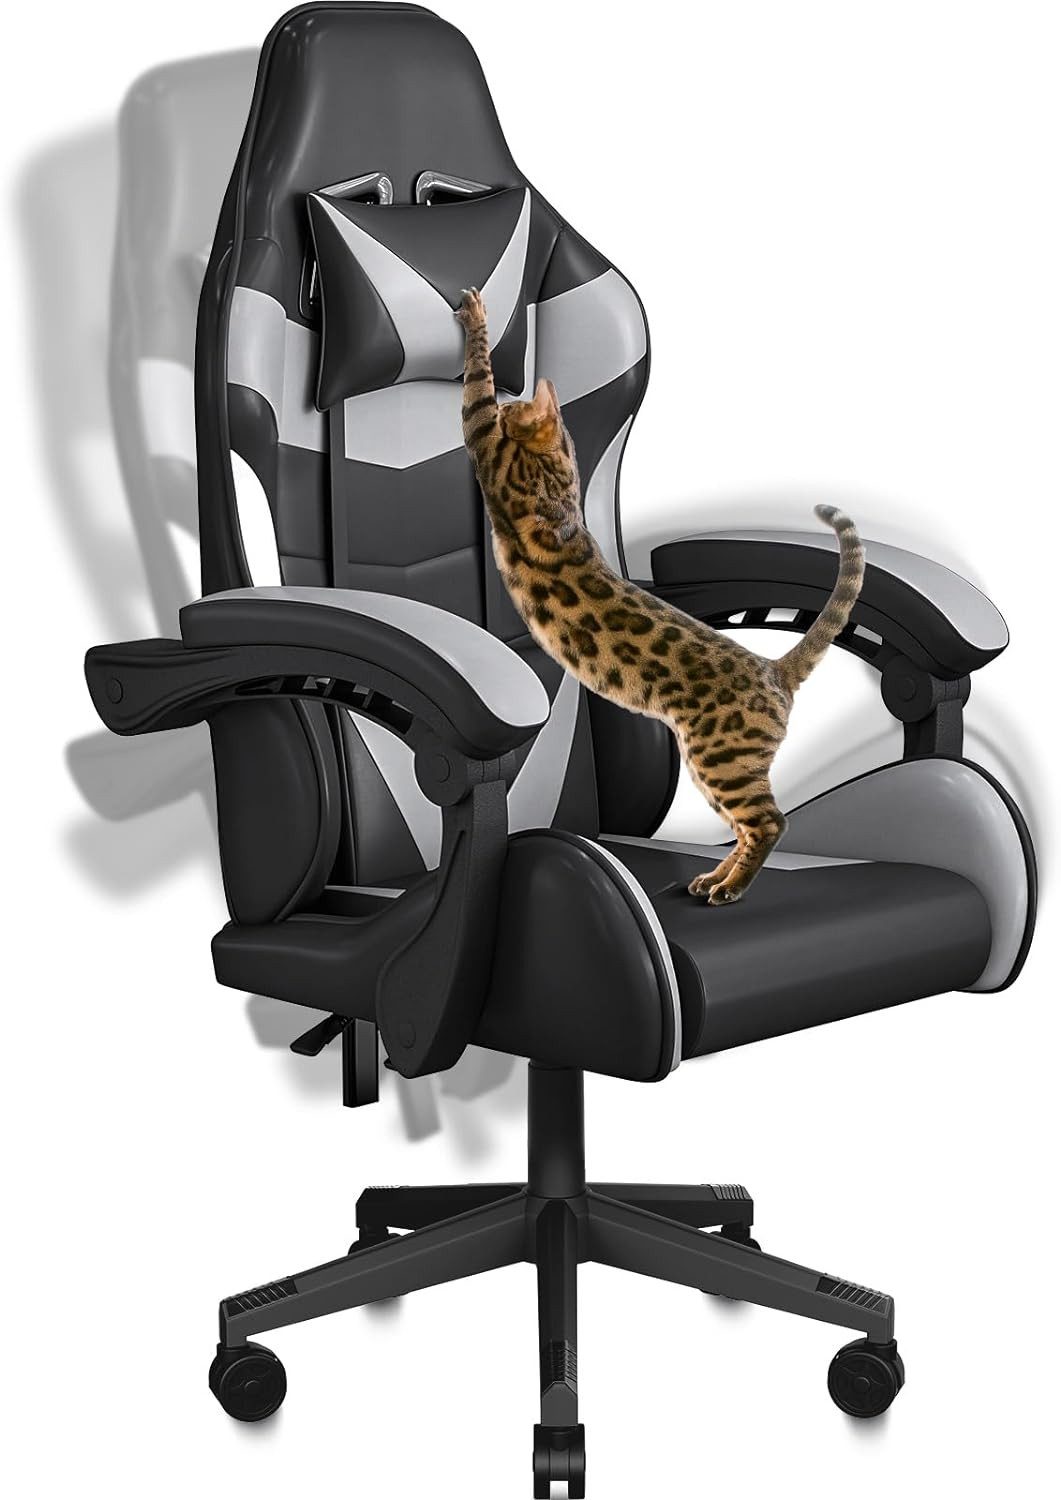 BASETBL Bürostuhl Ergonomischer Gaming-Stuhl mit abnehmbarer Kopfstütze & Lendenkissen, aus PU Leder, Neigungswinkel von 90° bis 135°, bis 150kg belastbar